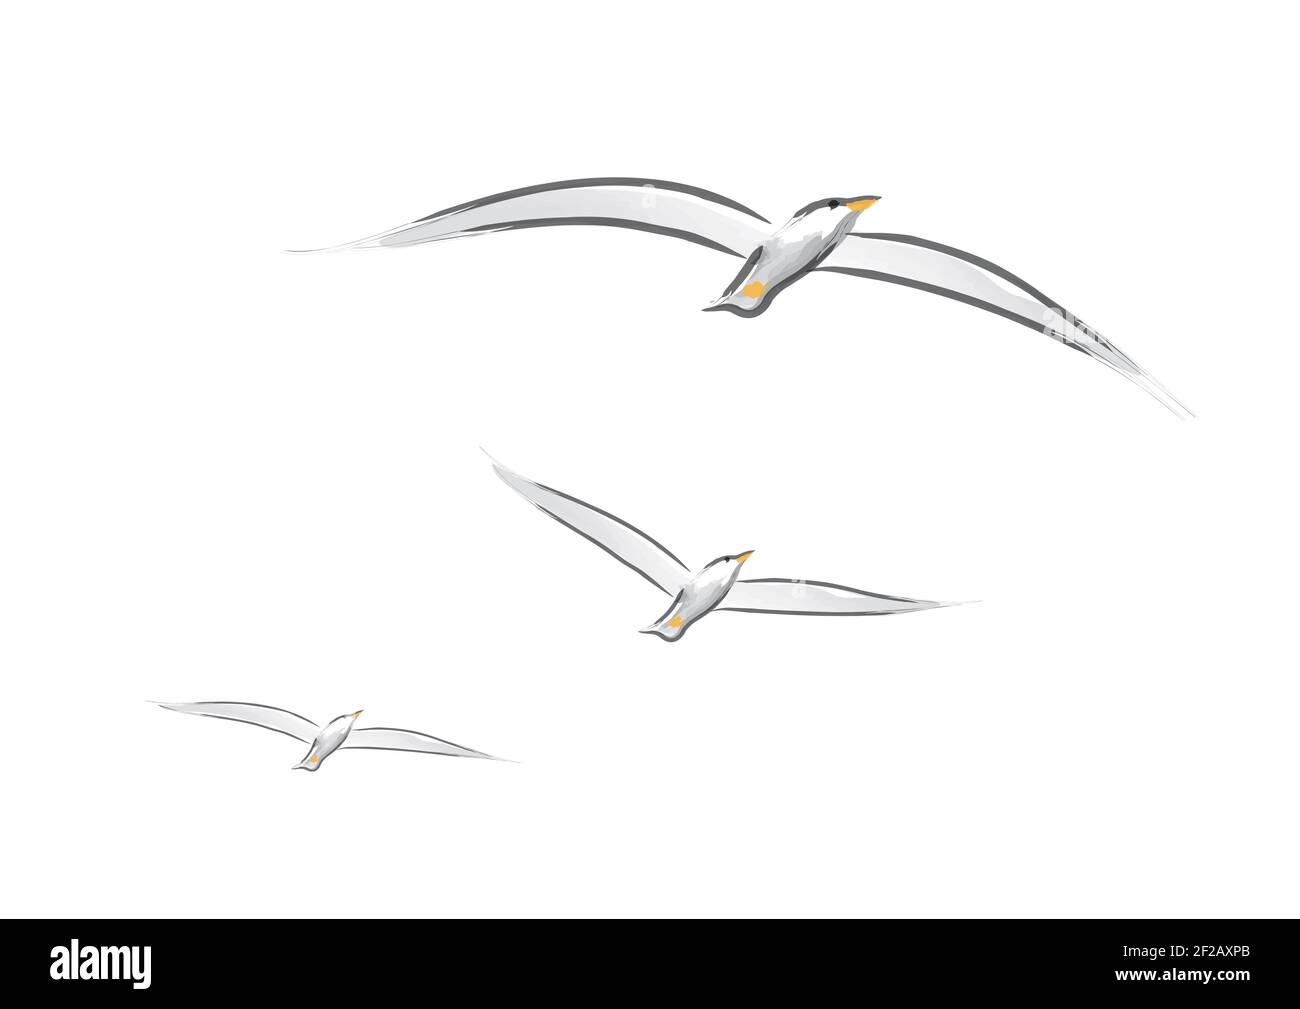 Dessin vectoriel de mouettes volantes avec ailes étalées Banque D'Images